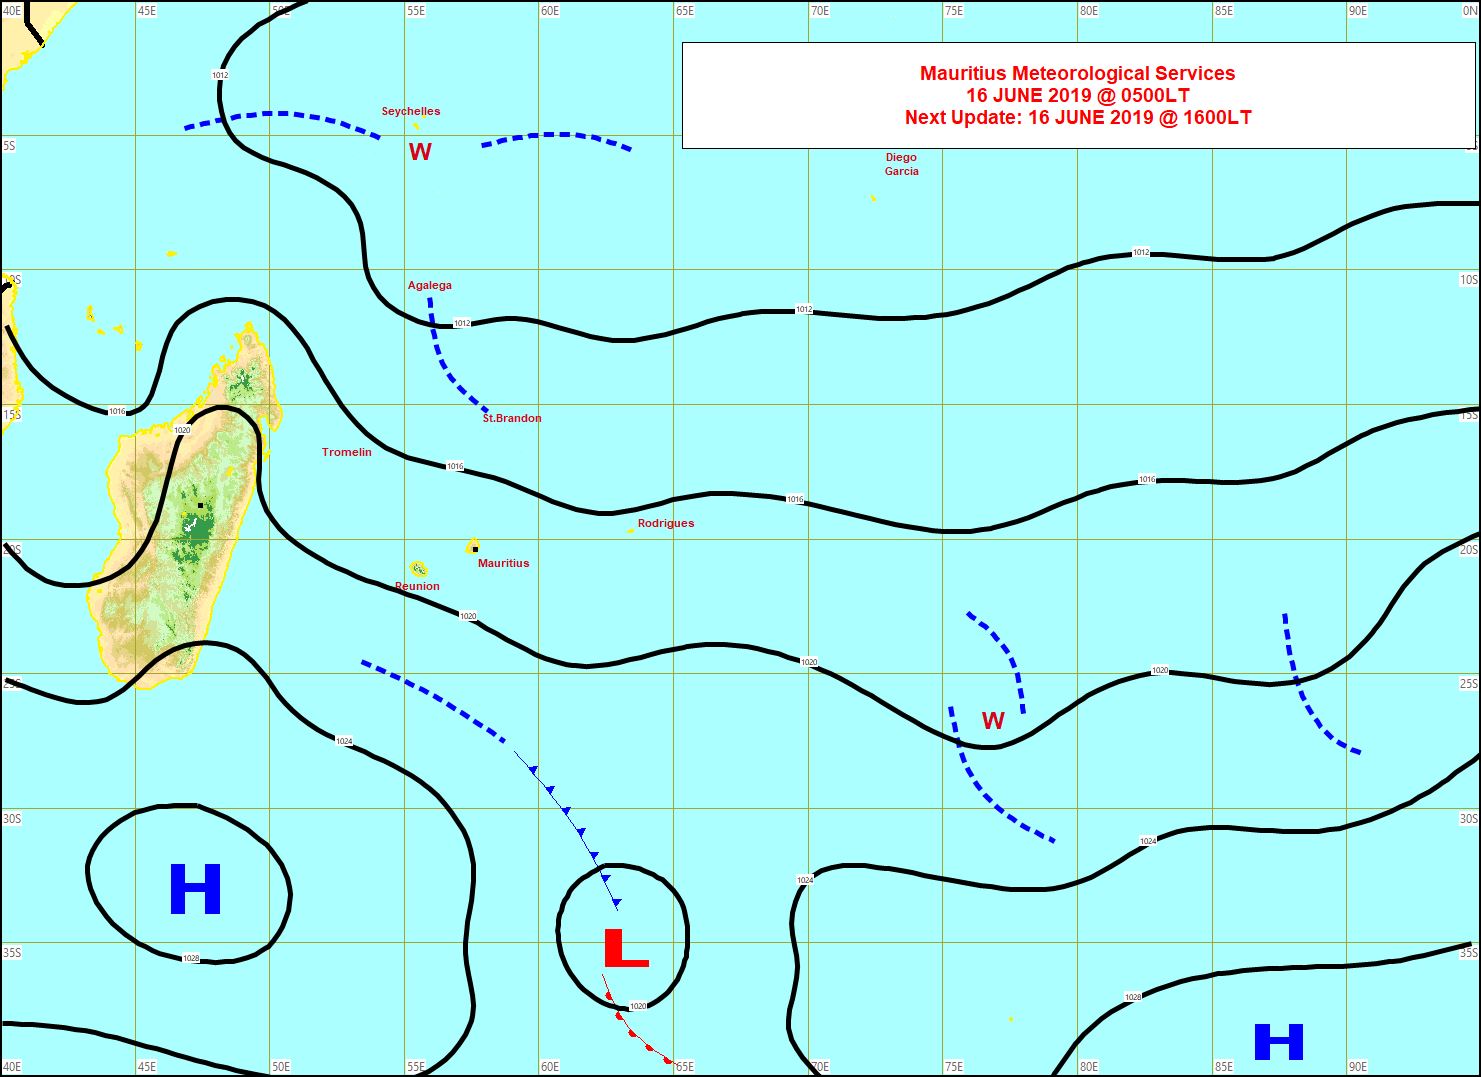 Analyse de la situation de surface ce matin. Un anticyclone(H) modéré vient se positionner au sud des Mascareignes et renforce un peu l'alizé mais sans excès. MMS